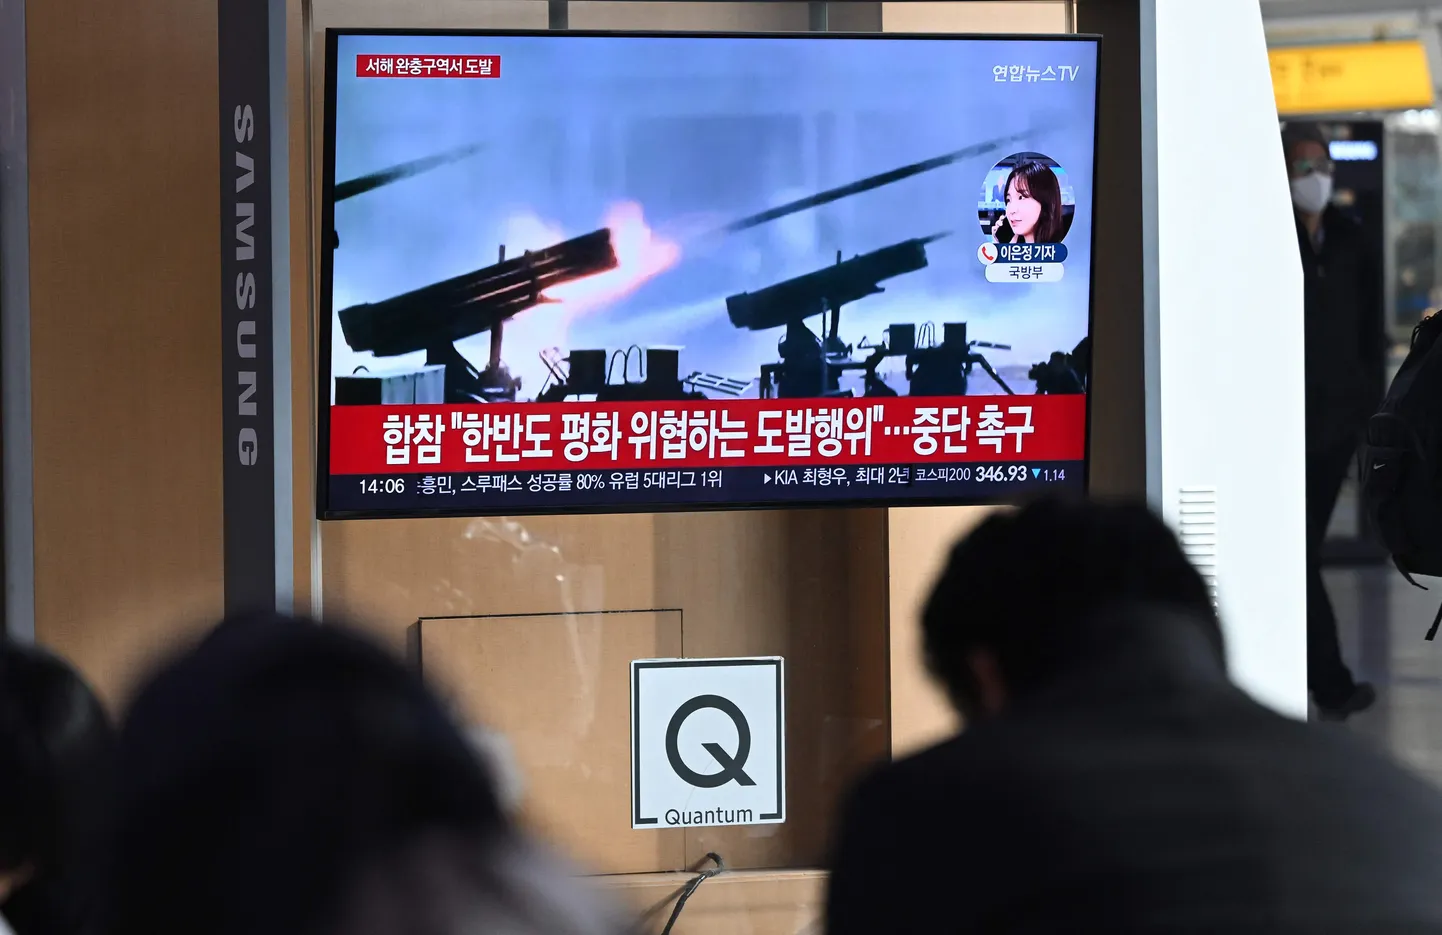 Inimesed vaatamas Souli raudteejaamas teleuudist Põhja-Korea suurtükitulest Lõuna-Korea saarte lähedal. Foto on illustratiivne.